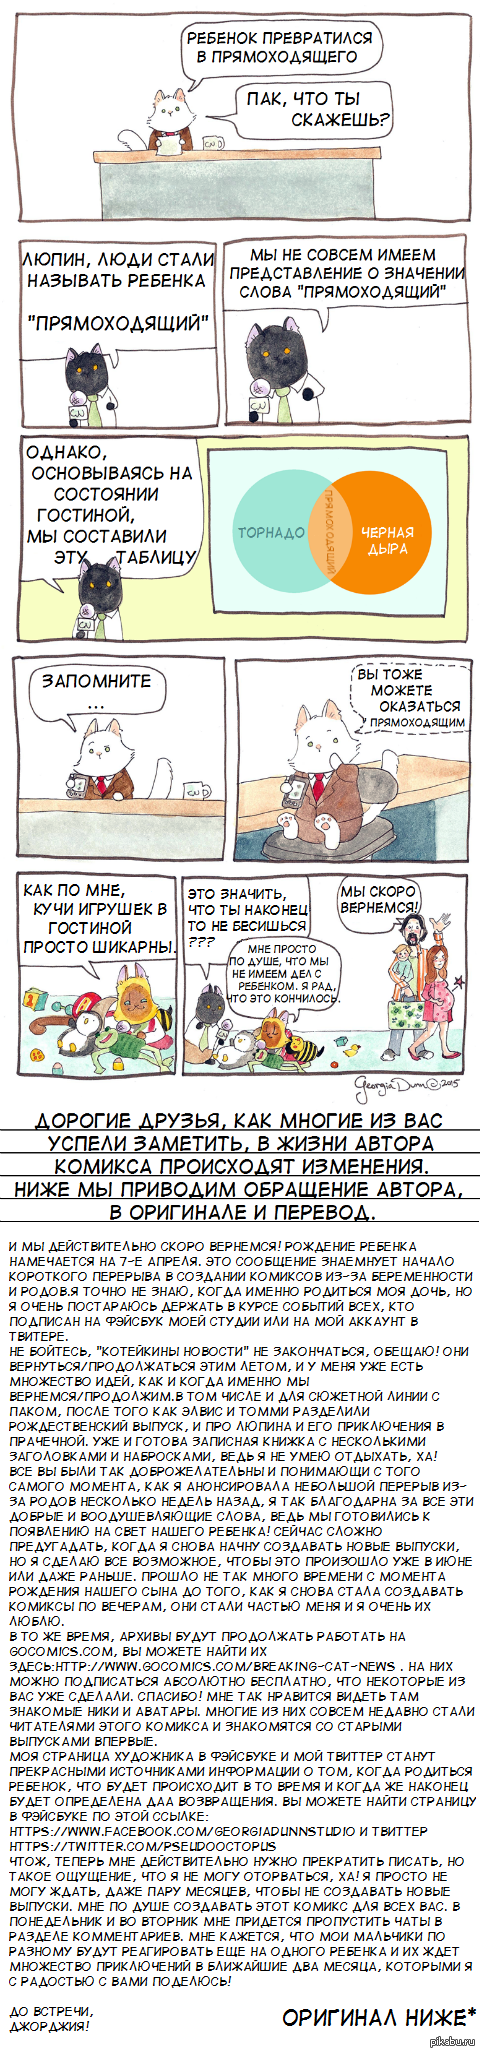   26' 15  : <a href="http://pikabu.ru/story/koteykinyi_novosti_25_15_3203617">http://pikabu.ru/story/_3203617</a>